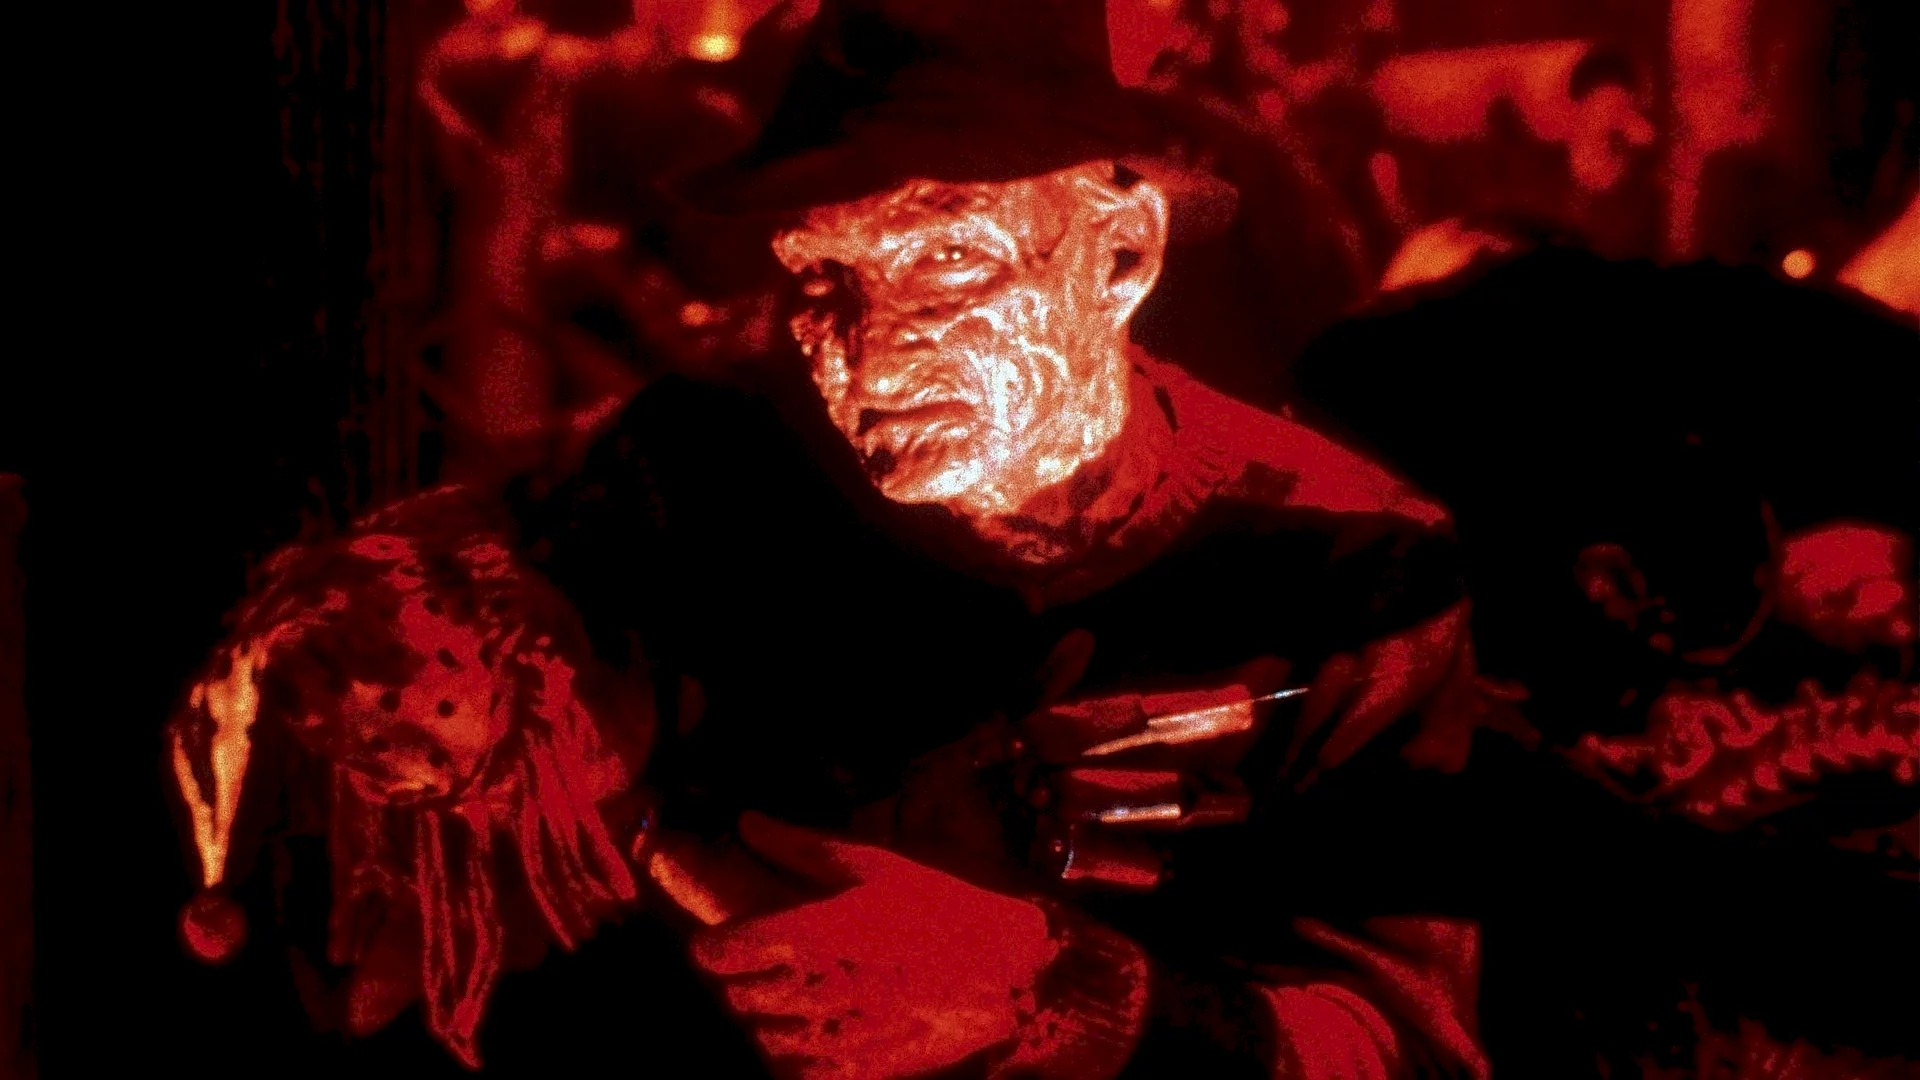 Photo du film : Freddy - Les Griffes de la nuit